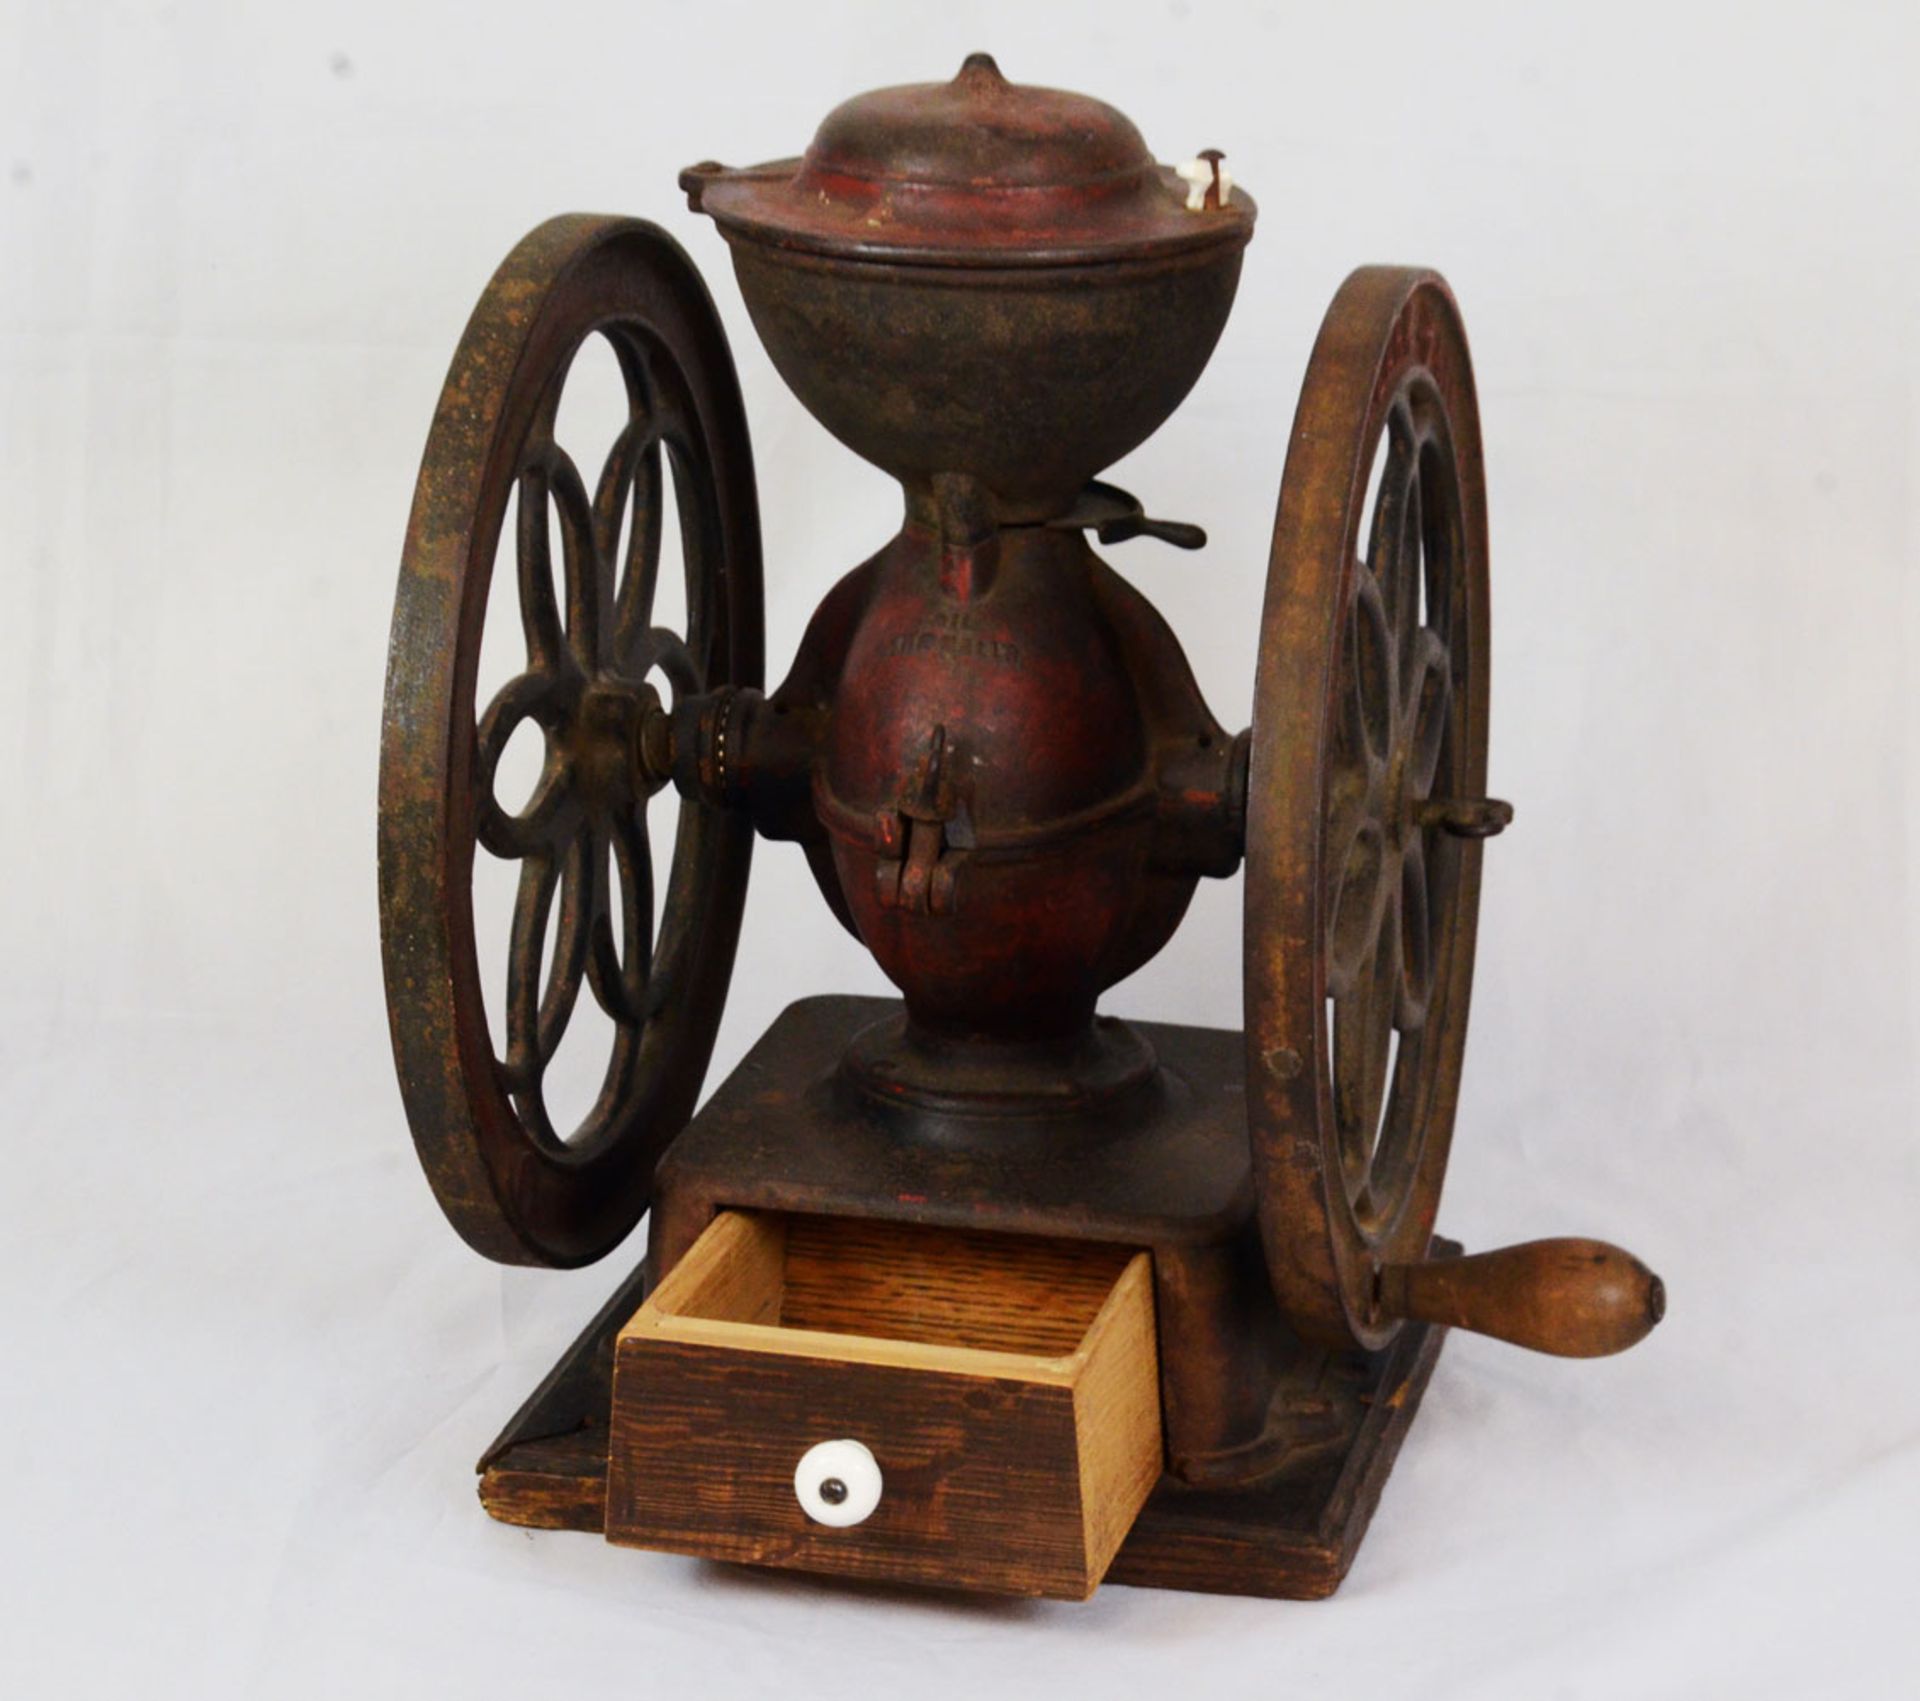 Vintage Landers Fray & Clark coffee grinder